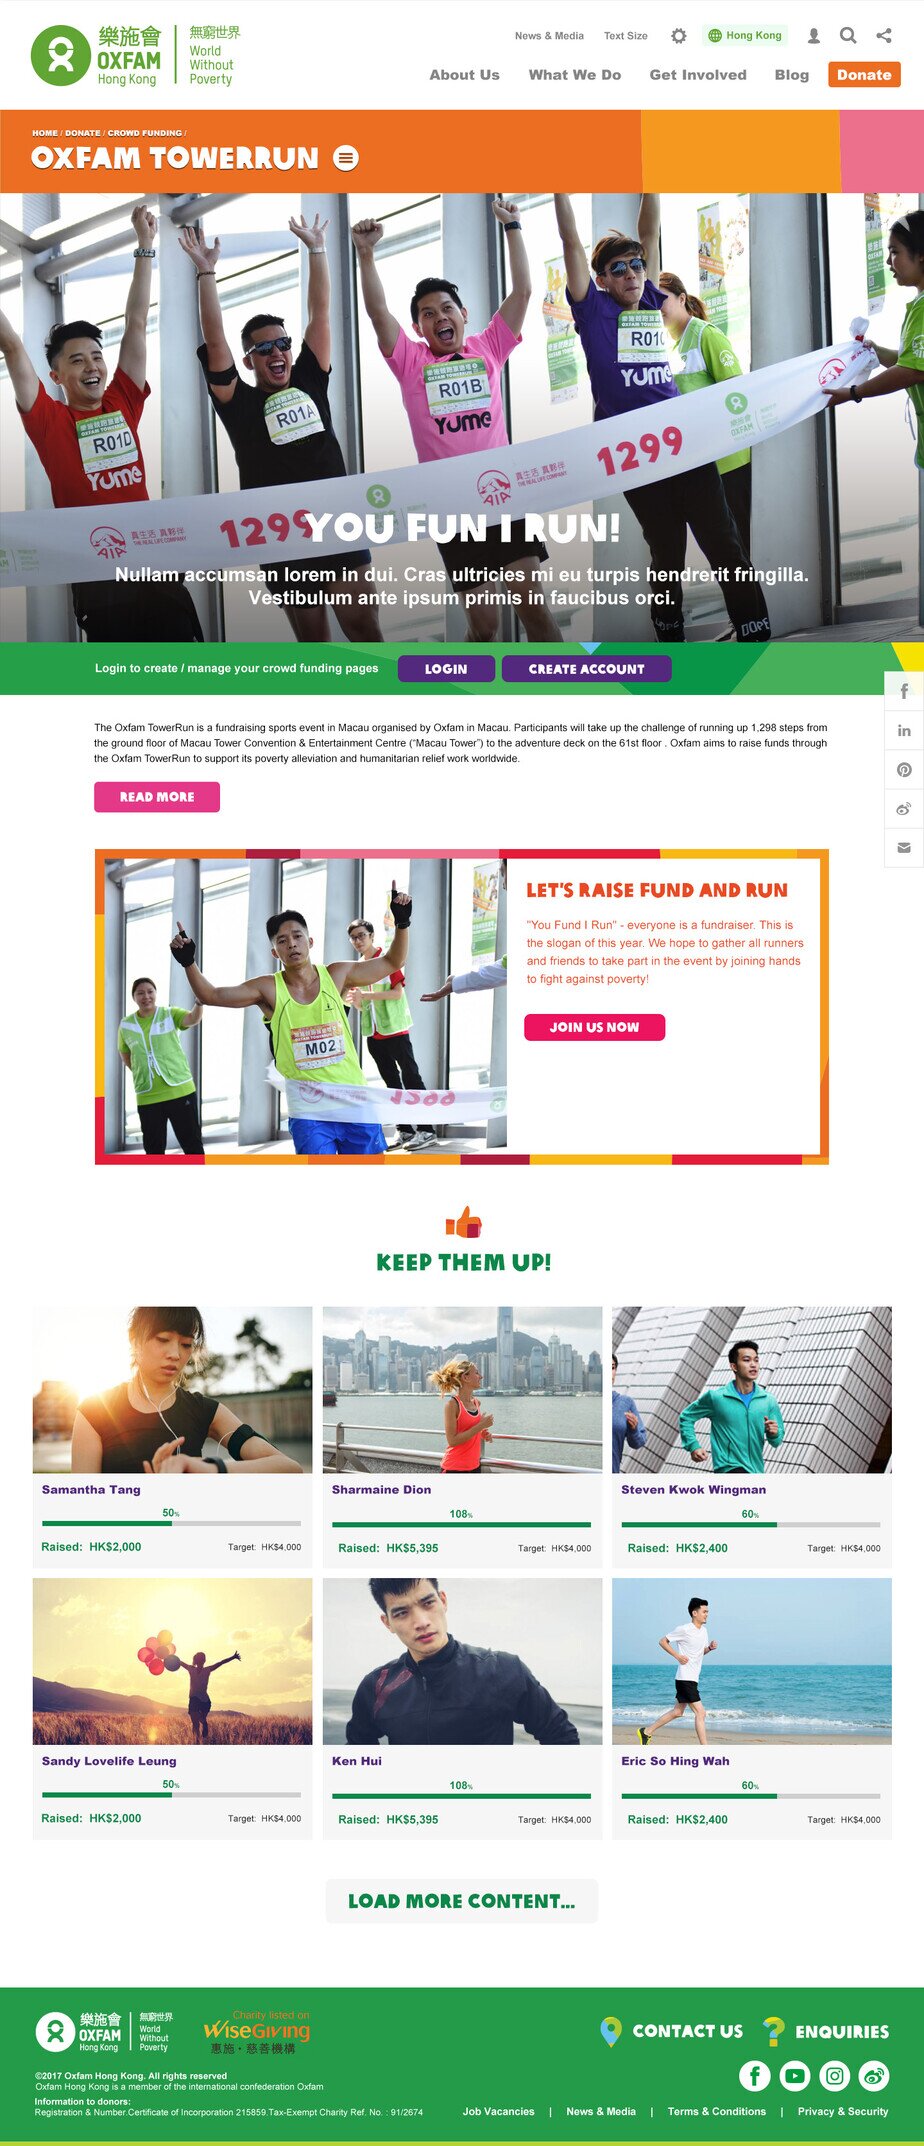 Oxfam Hong Kong Desktop Your Fun Run